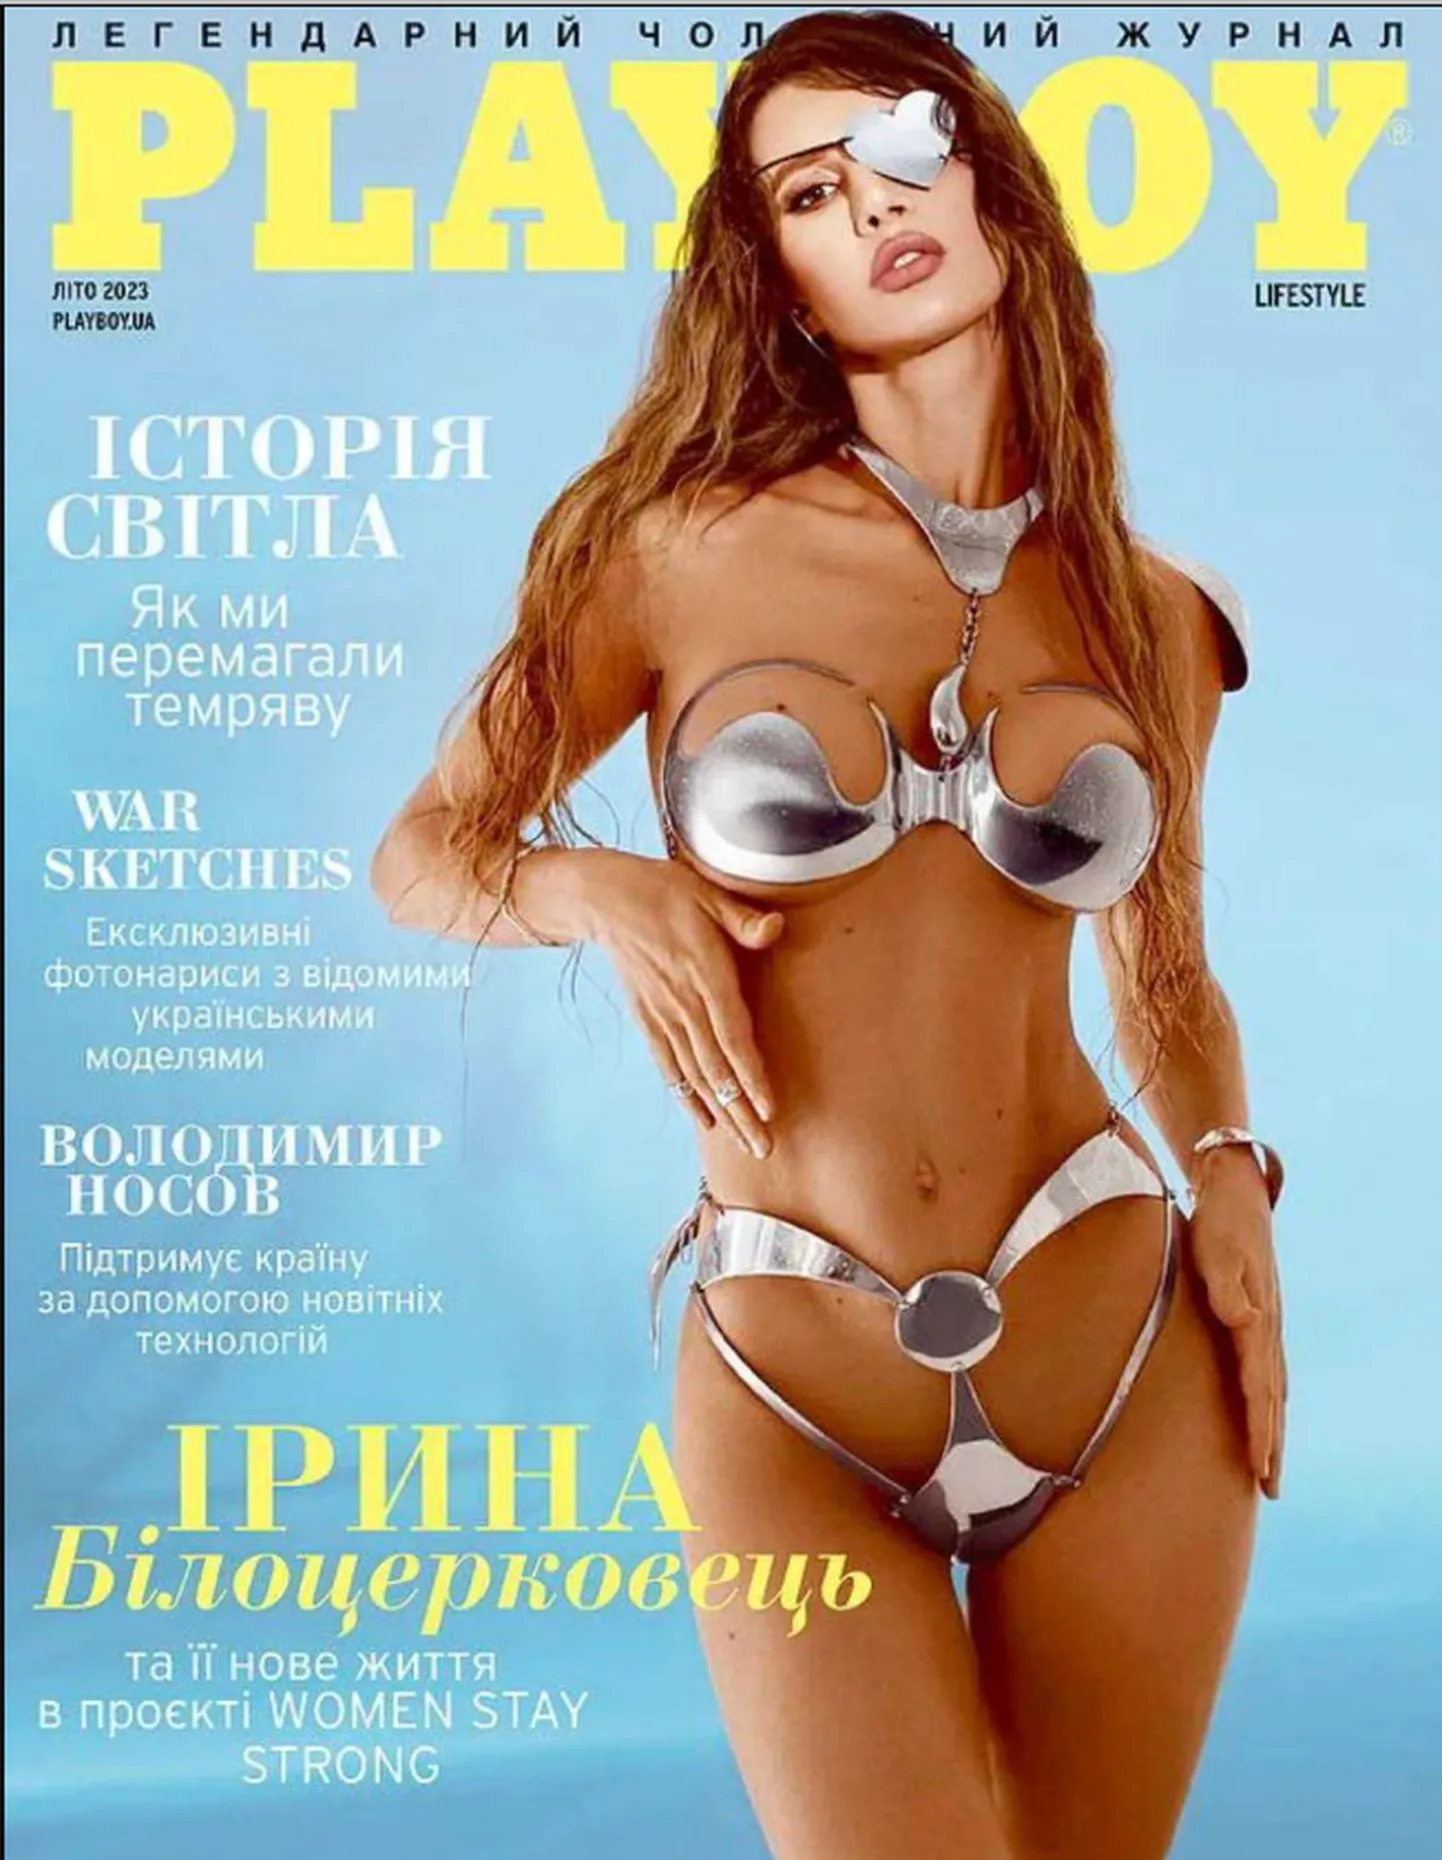 Обложка журнала Playboy с Ириной Белоцерковец